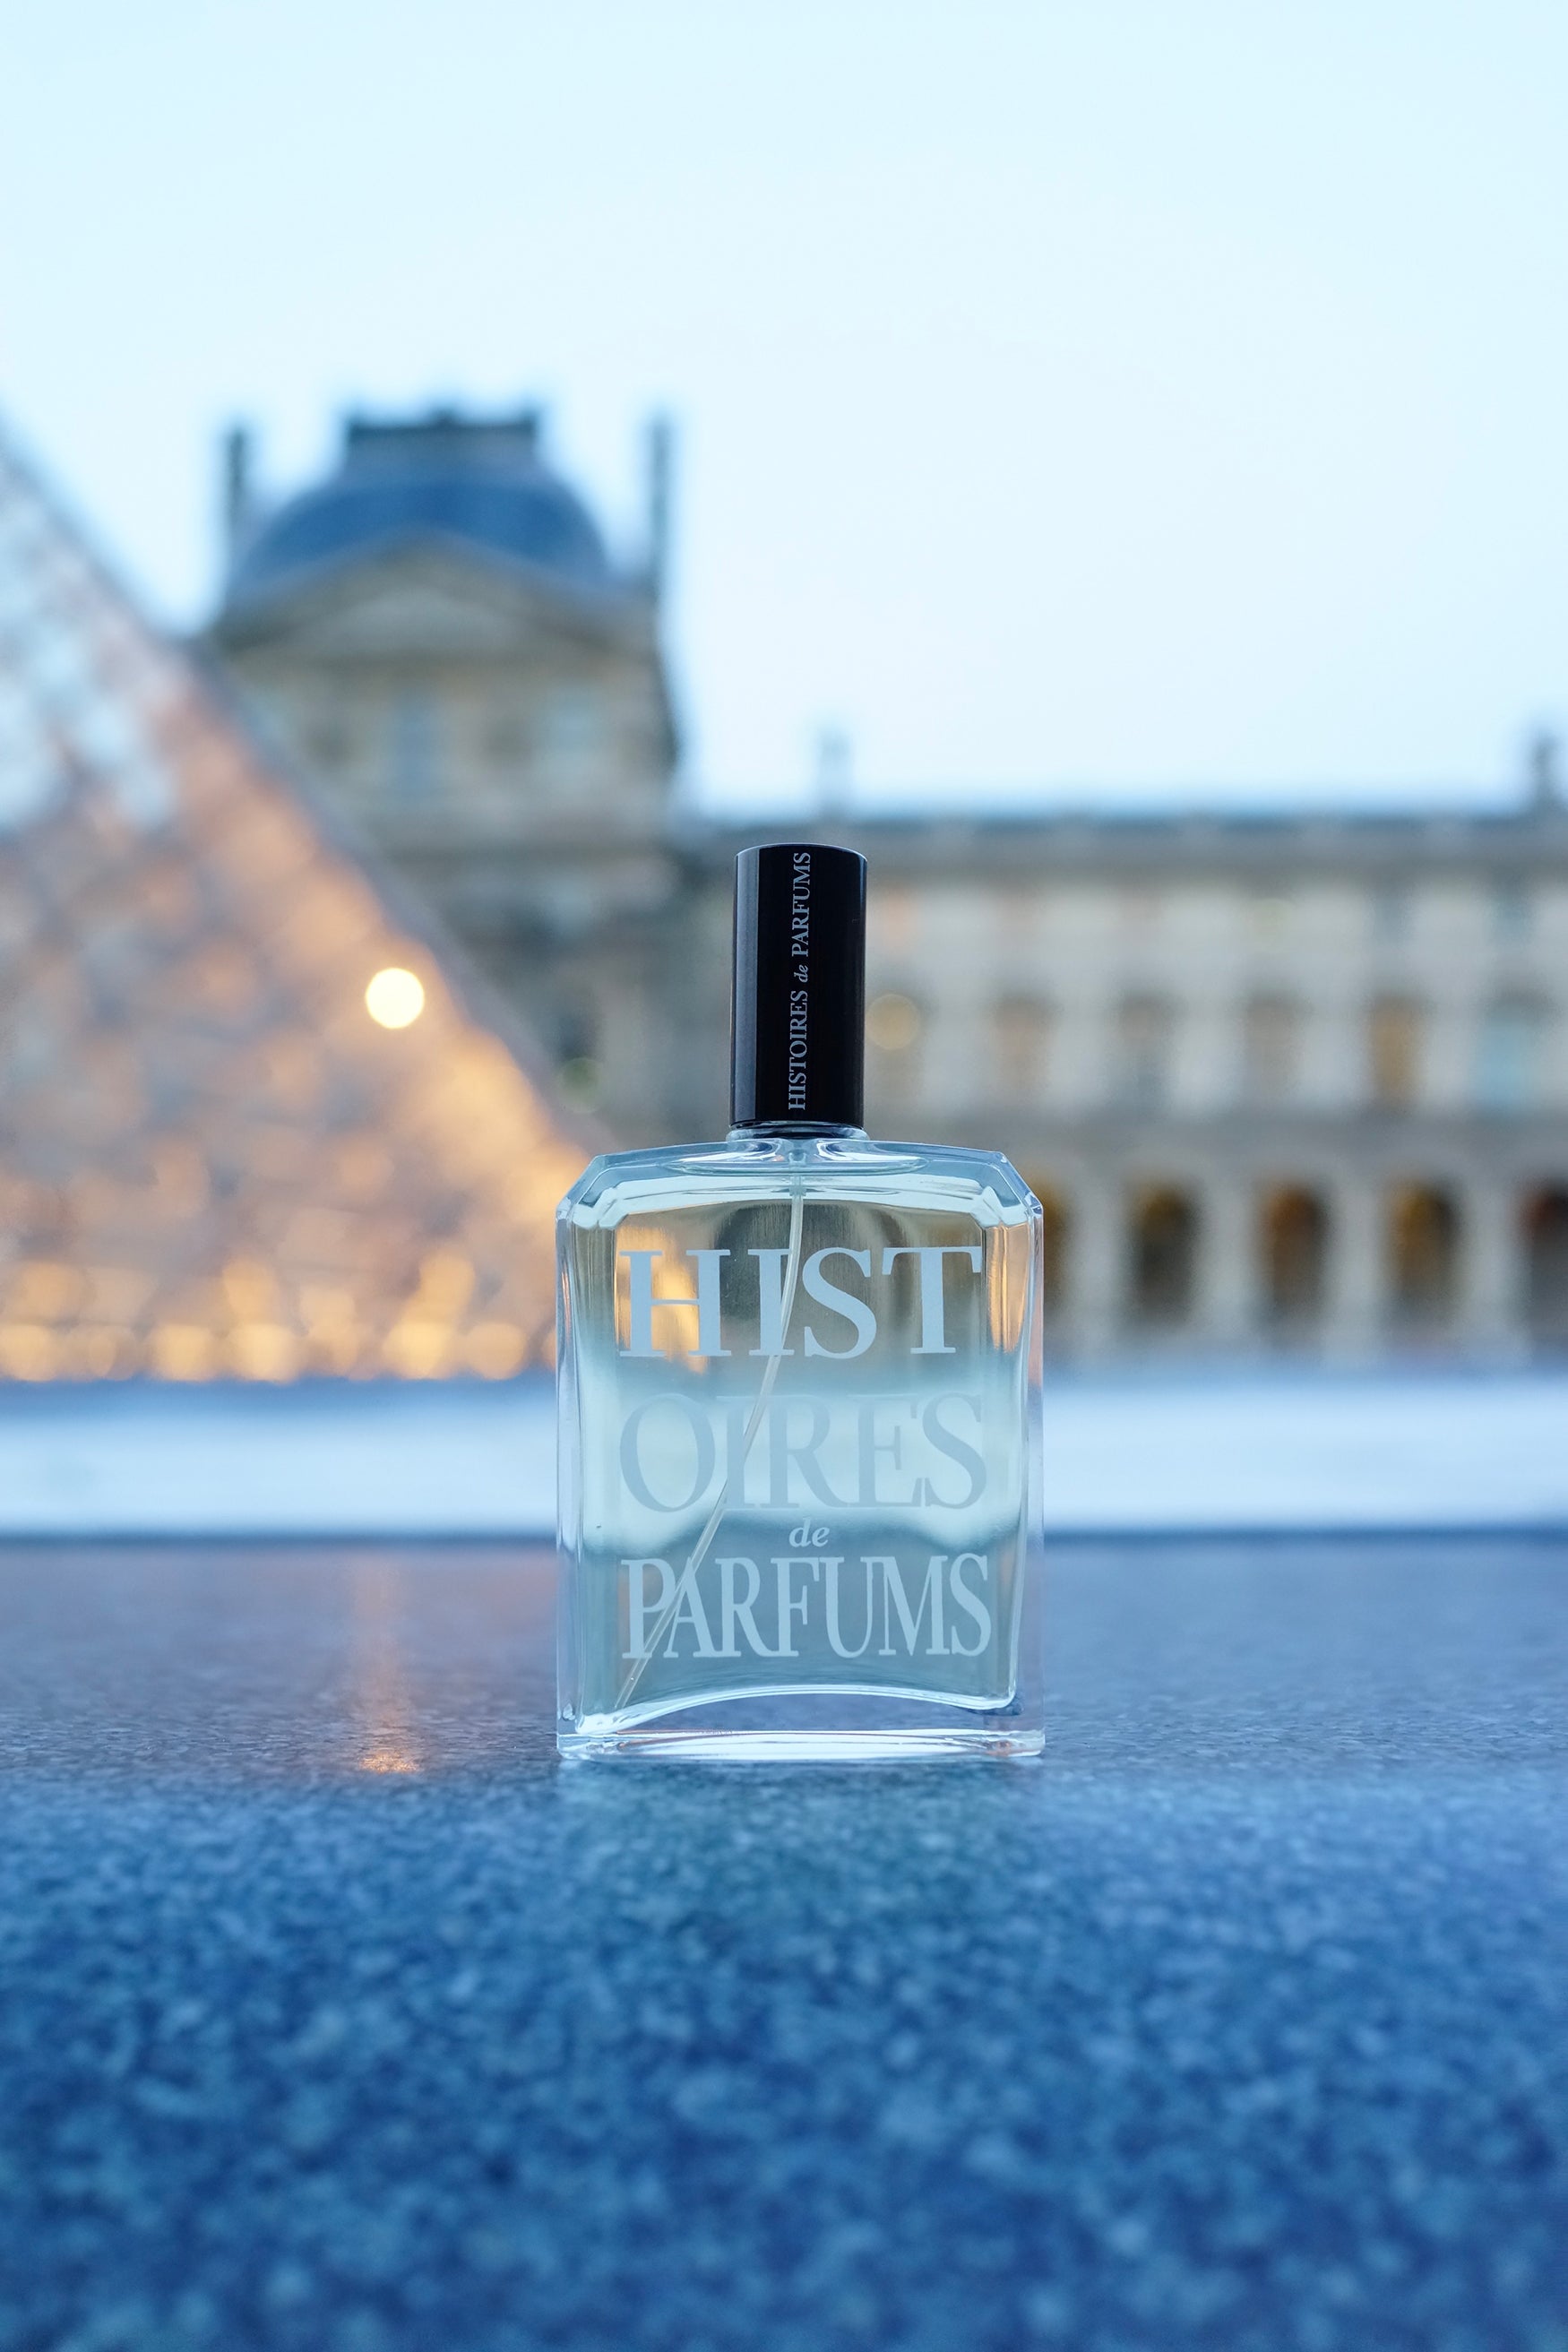 Le Louvre - Histoires de Parfums